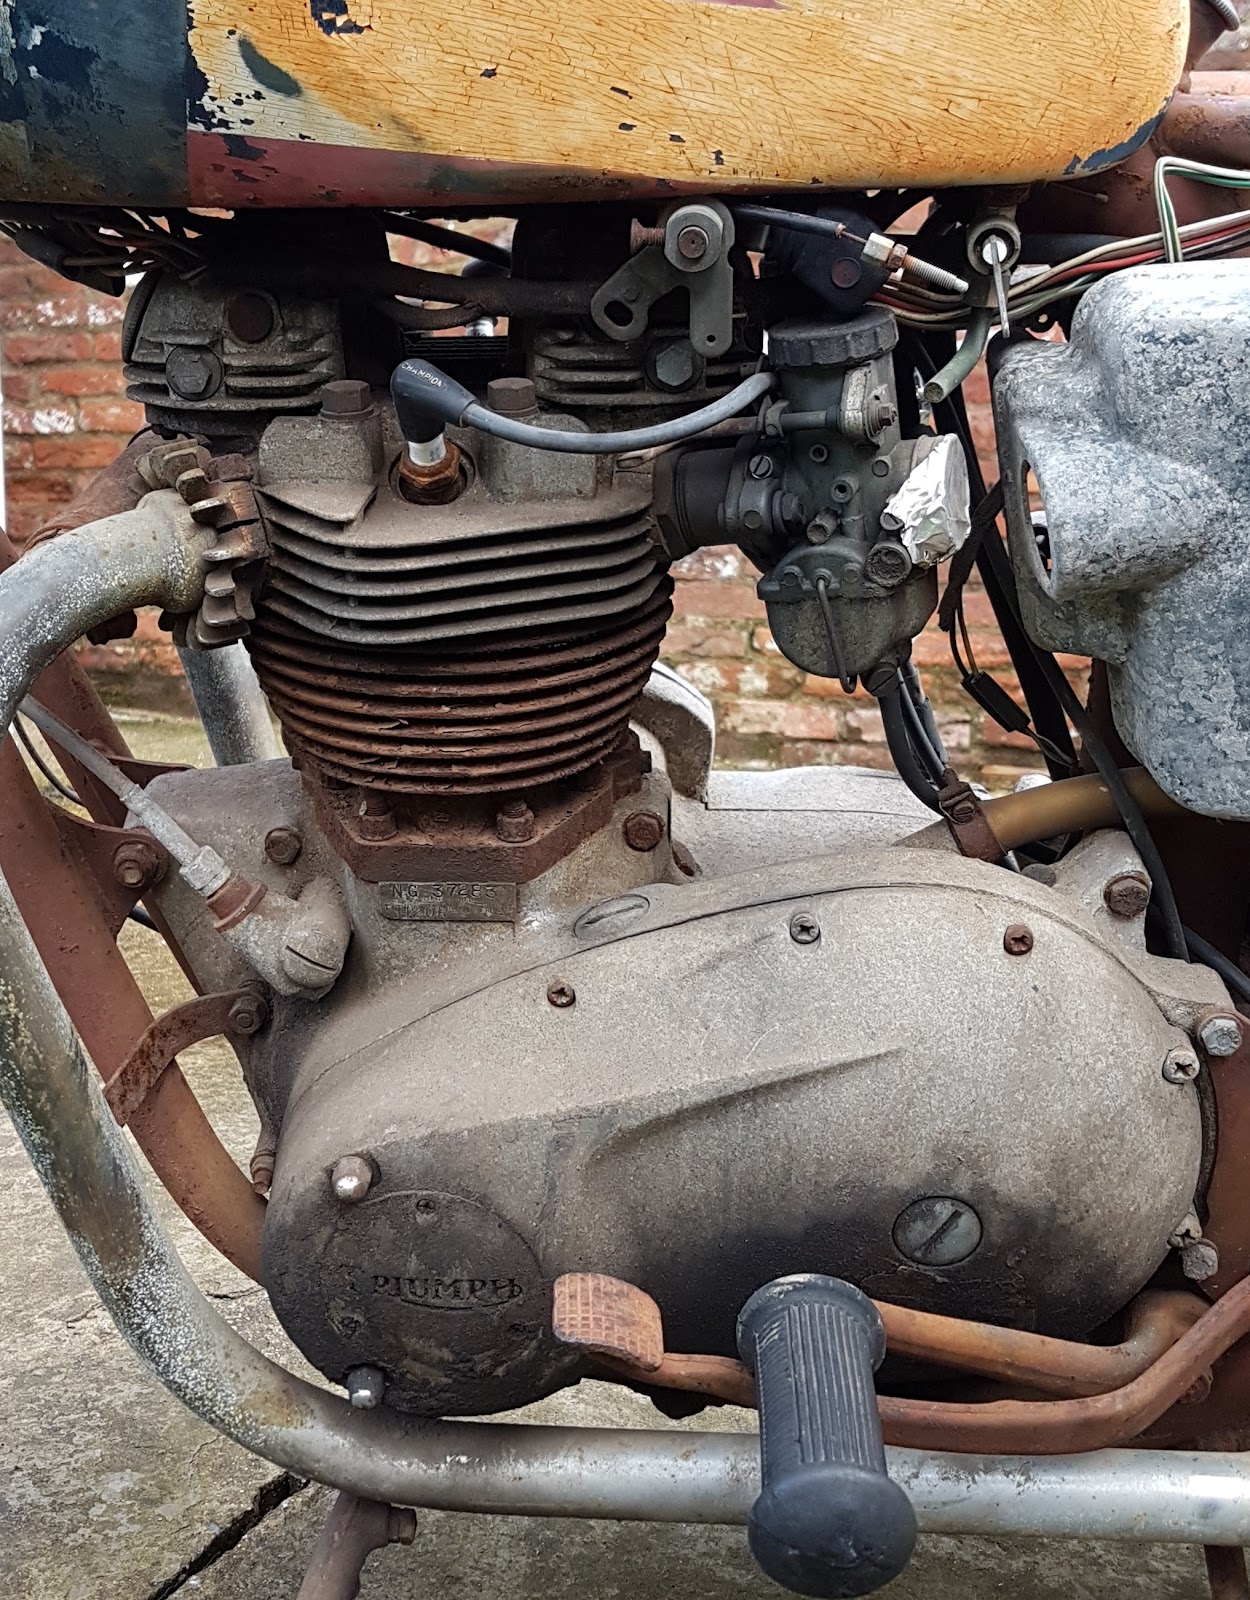 Triumph Bonneville Engine Rebuild subject.